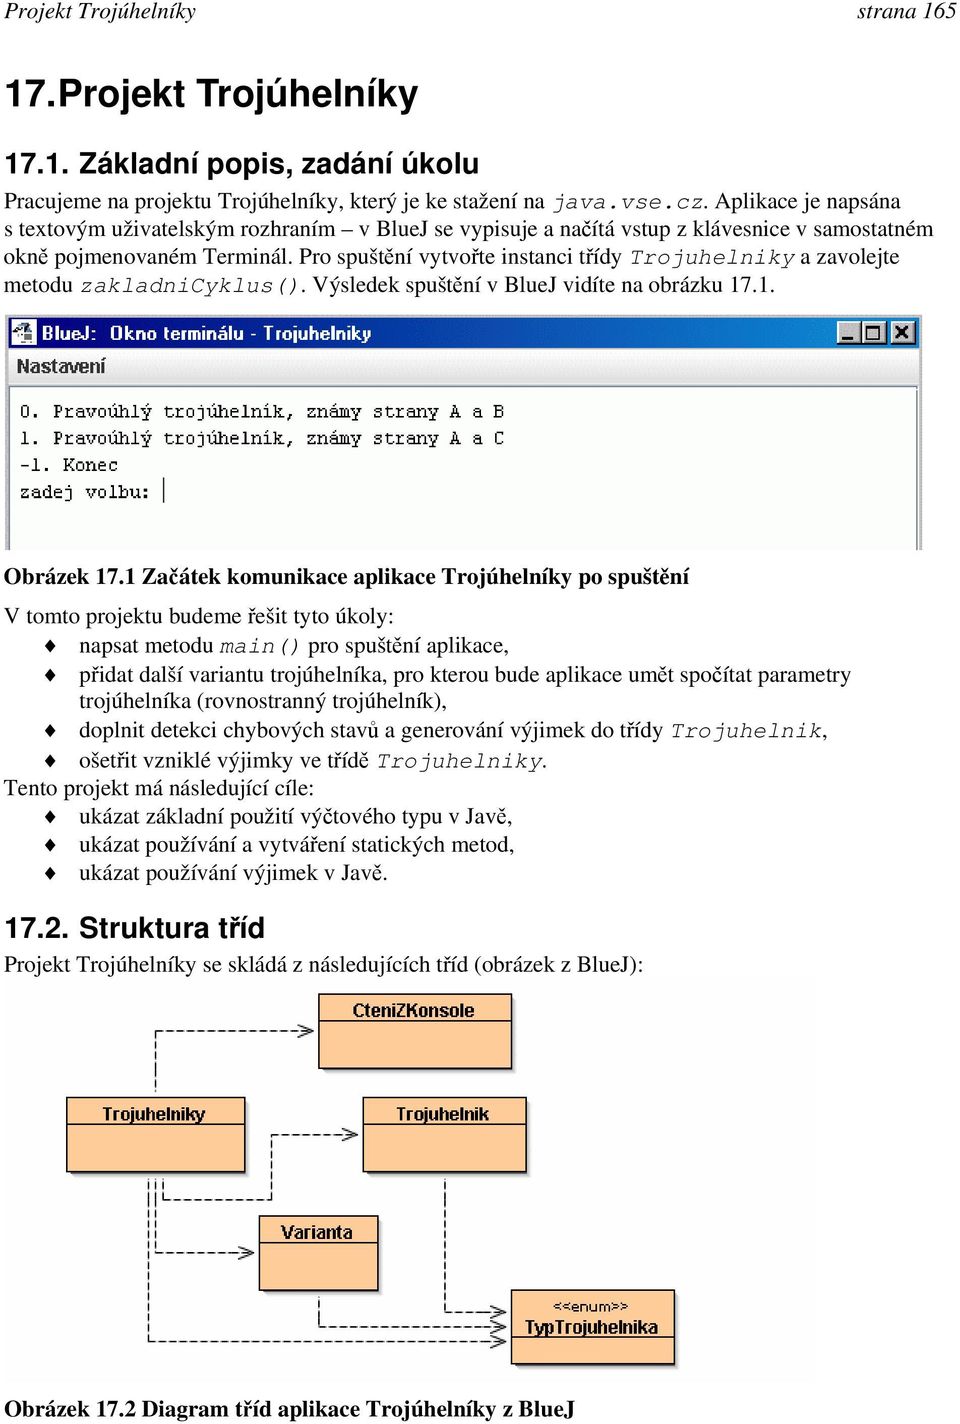 Pro spuštění vytvořte instanci třídy Trojuhelniky a zavolejte metodu zakladnicyklus(). Výsledek spuštění v BlueJ vidíte na obrázku 17.1. Obrázek 17.